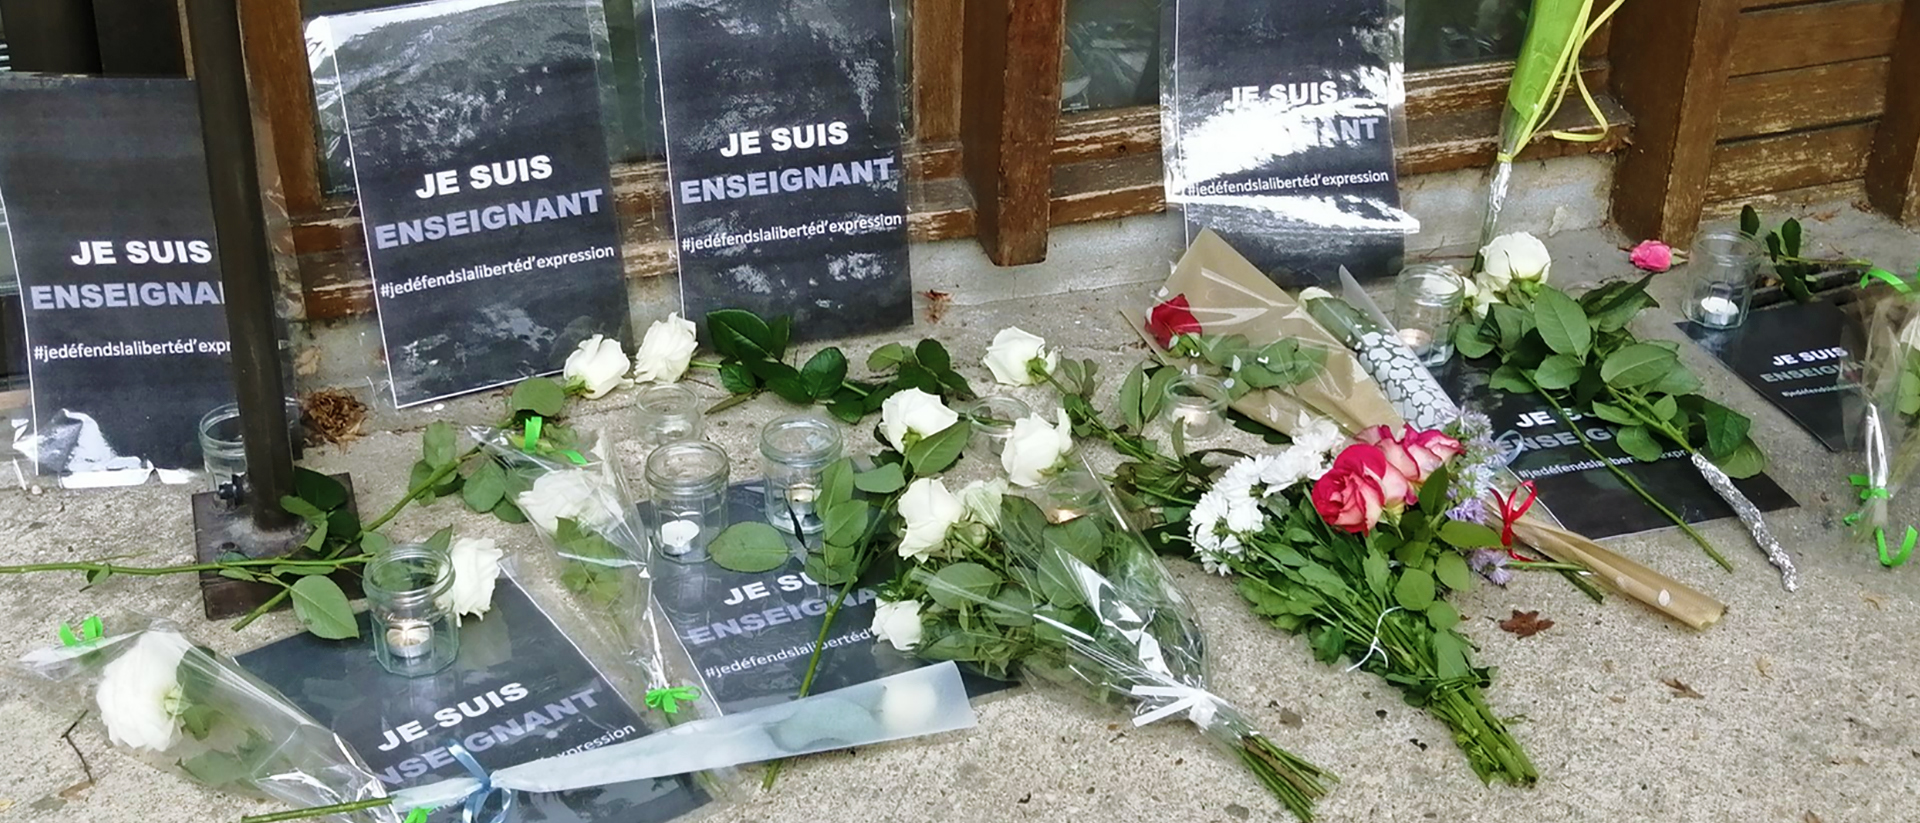 Les hommages déposés devant le collège de l'enseignant décapité | © Twitter